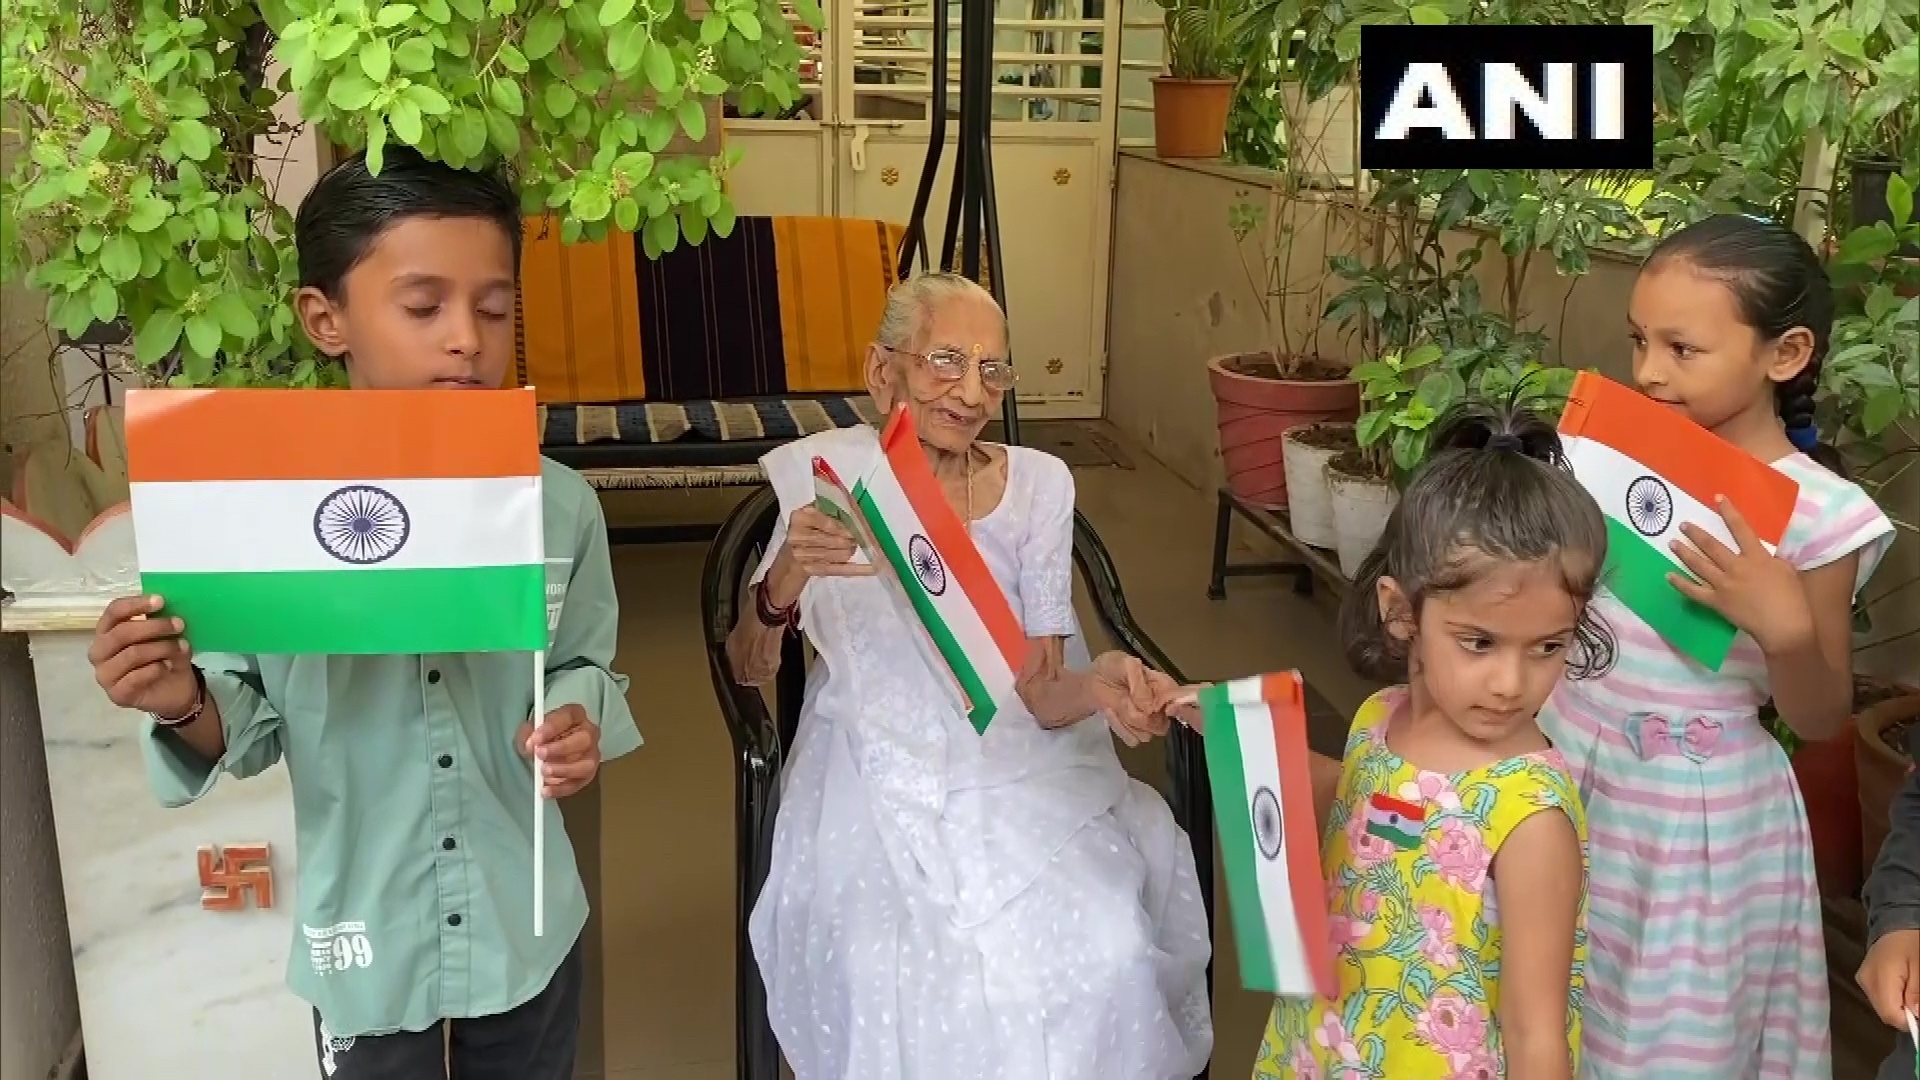  गांधीनगर. 'हर घर तिरंगा अभियान' के तहत प्रधानमंत्री नरेंद्र मोदी की मां हीराबेन मोदी ने शनिवार को बच्चों को राष्ट्रीय ध्वज बांटे और तिरंगा फहराया.